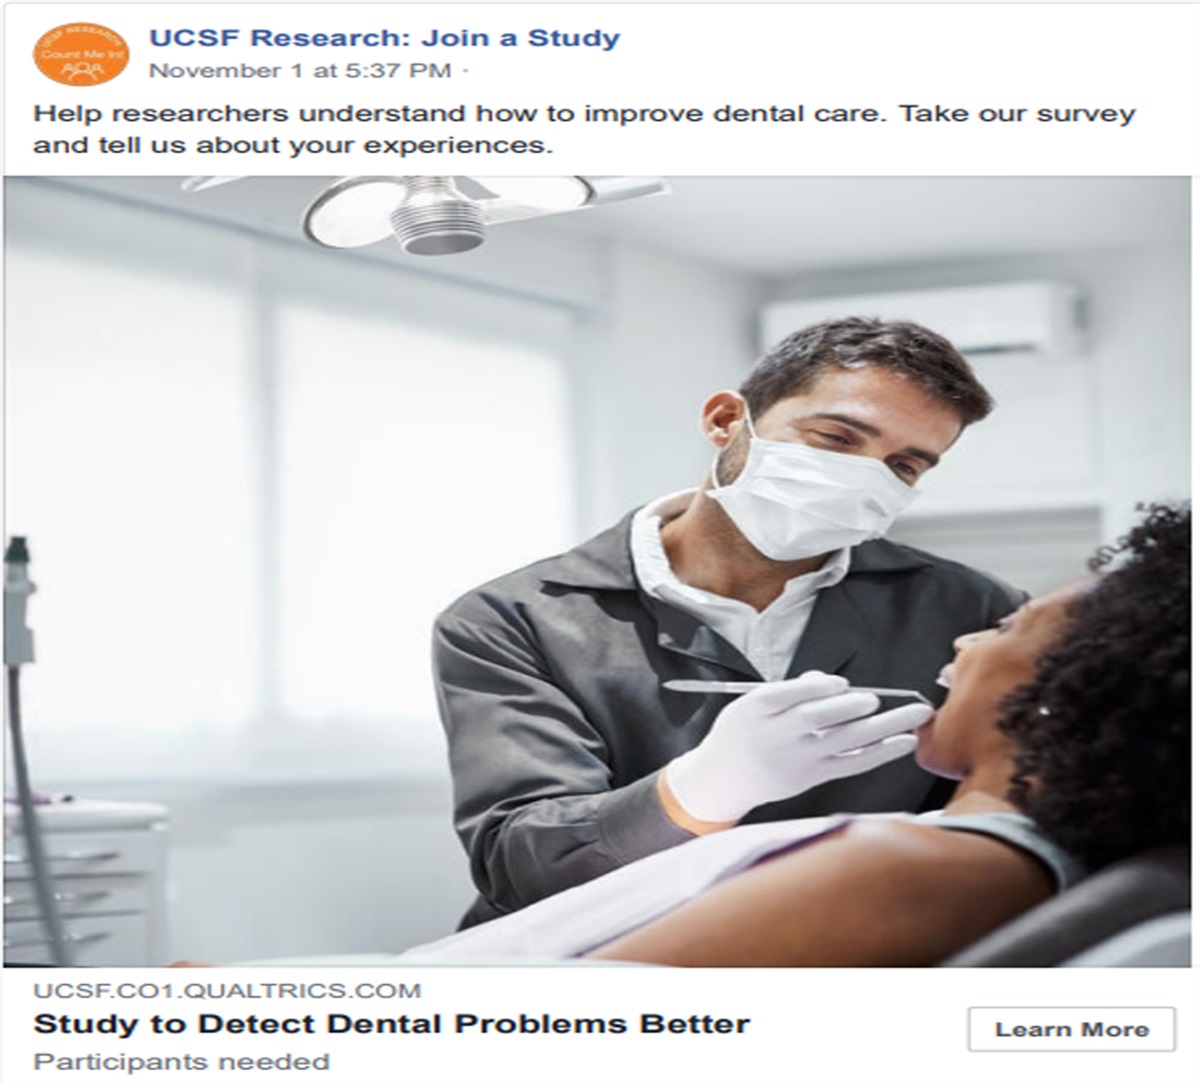 Patients’ Experiences of Dental Diagnostic Failures: A Qualitative Study Using Social Media